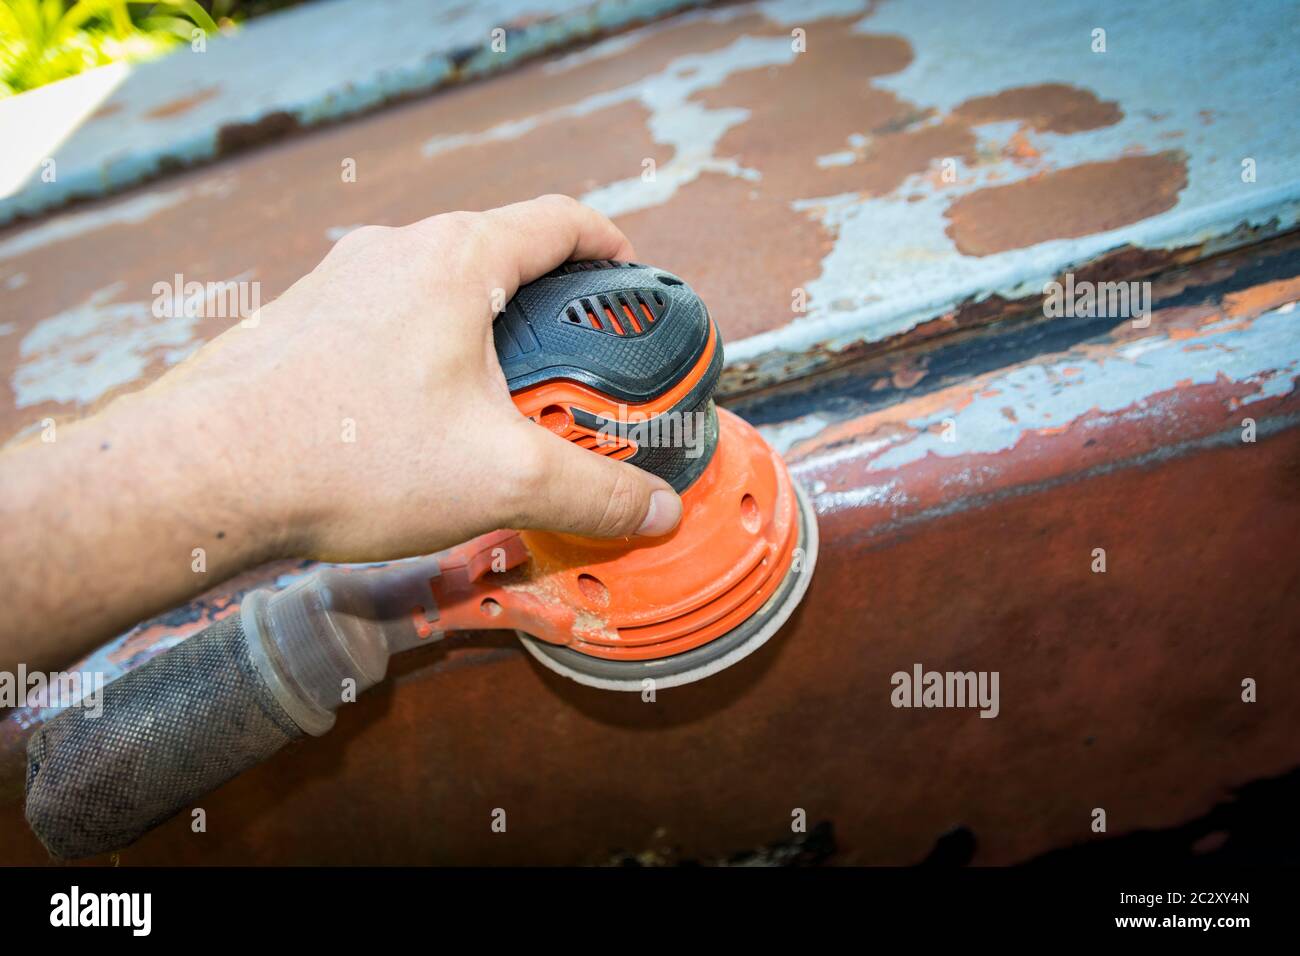 La mano dell'uomo aziona una levigatrice a disco/orbitale, per rimuovere vernice e ruggine dalle porte metalliche Foto Stock